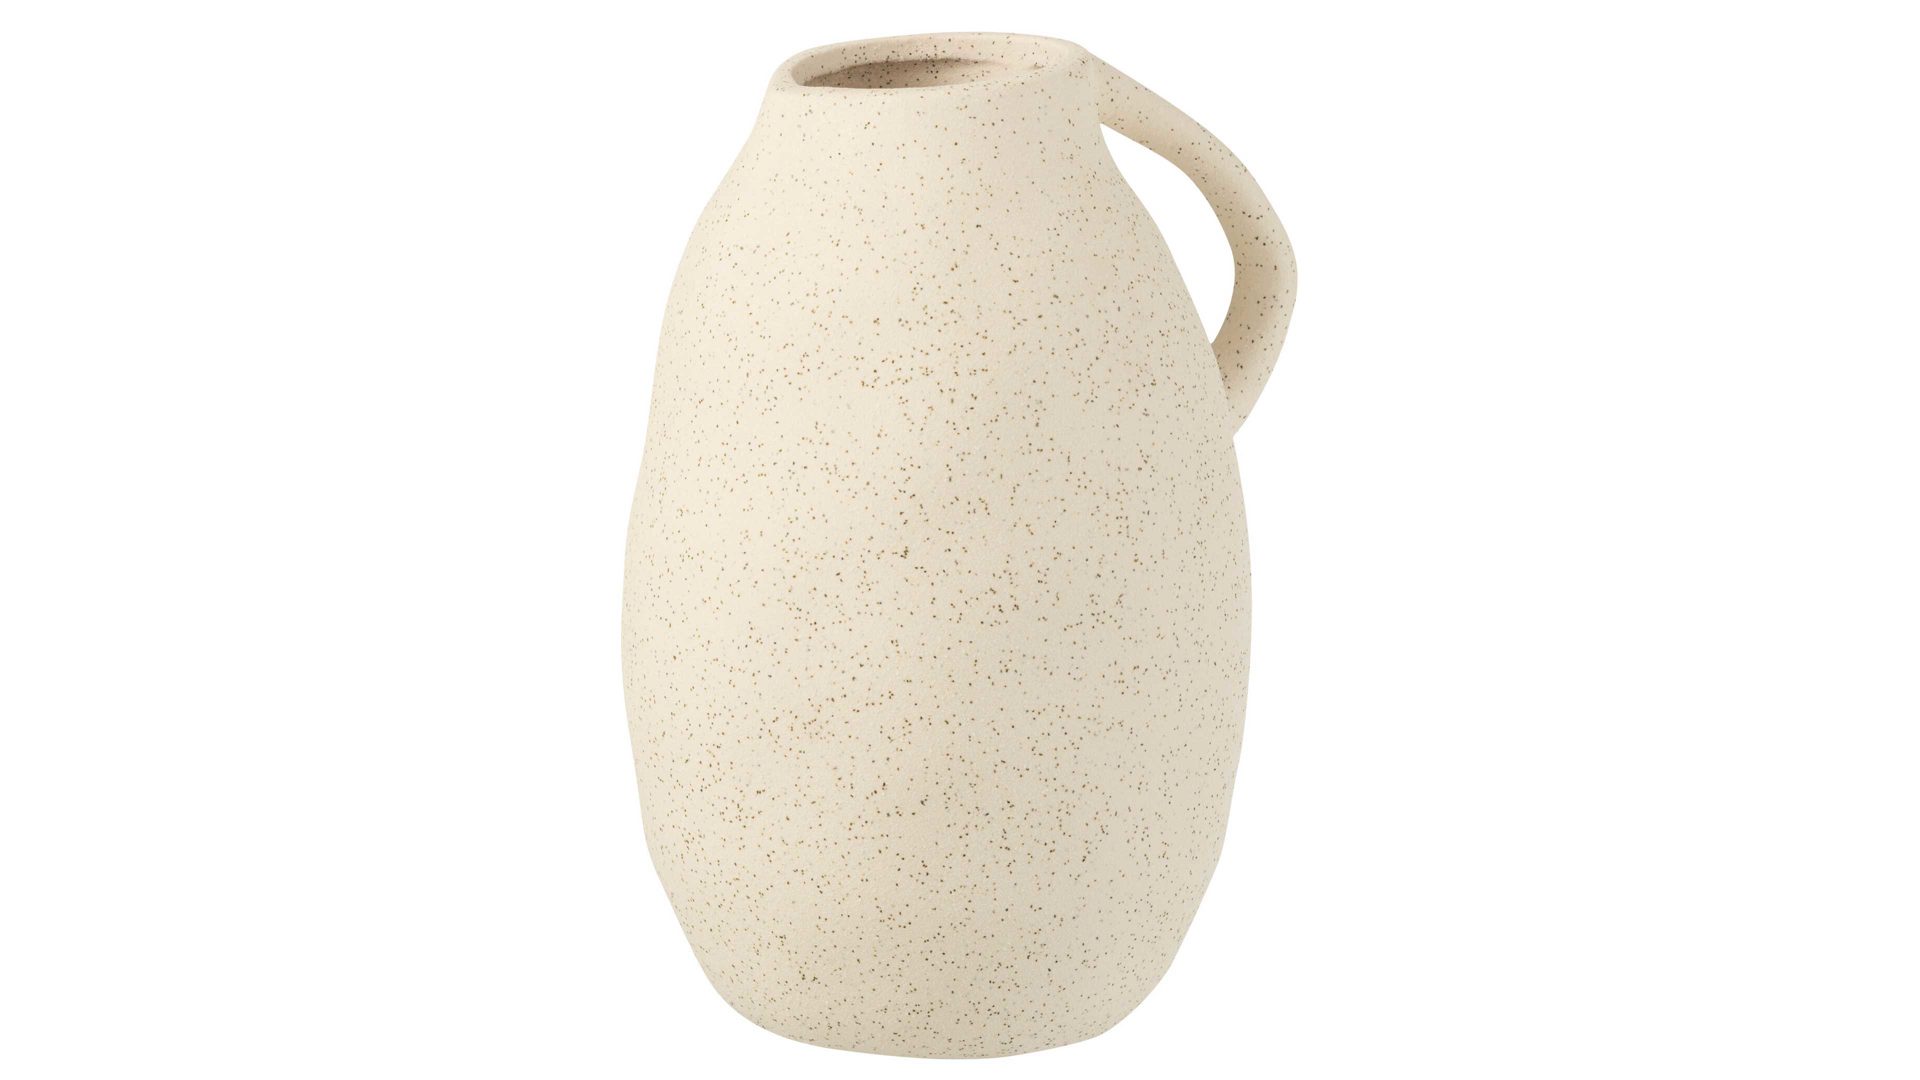 Vase Interliving BEST BUDDYS! aus Keramik in Beige Interliving BEST BUDDYS! Vase Krug gesprenkeltes beiges Steinzeug - Höhe ca. 25 cm